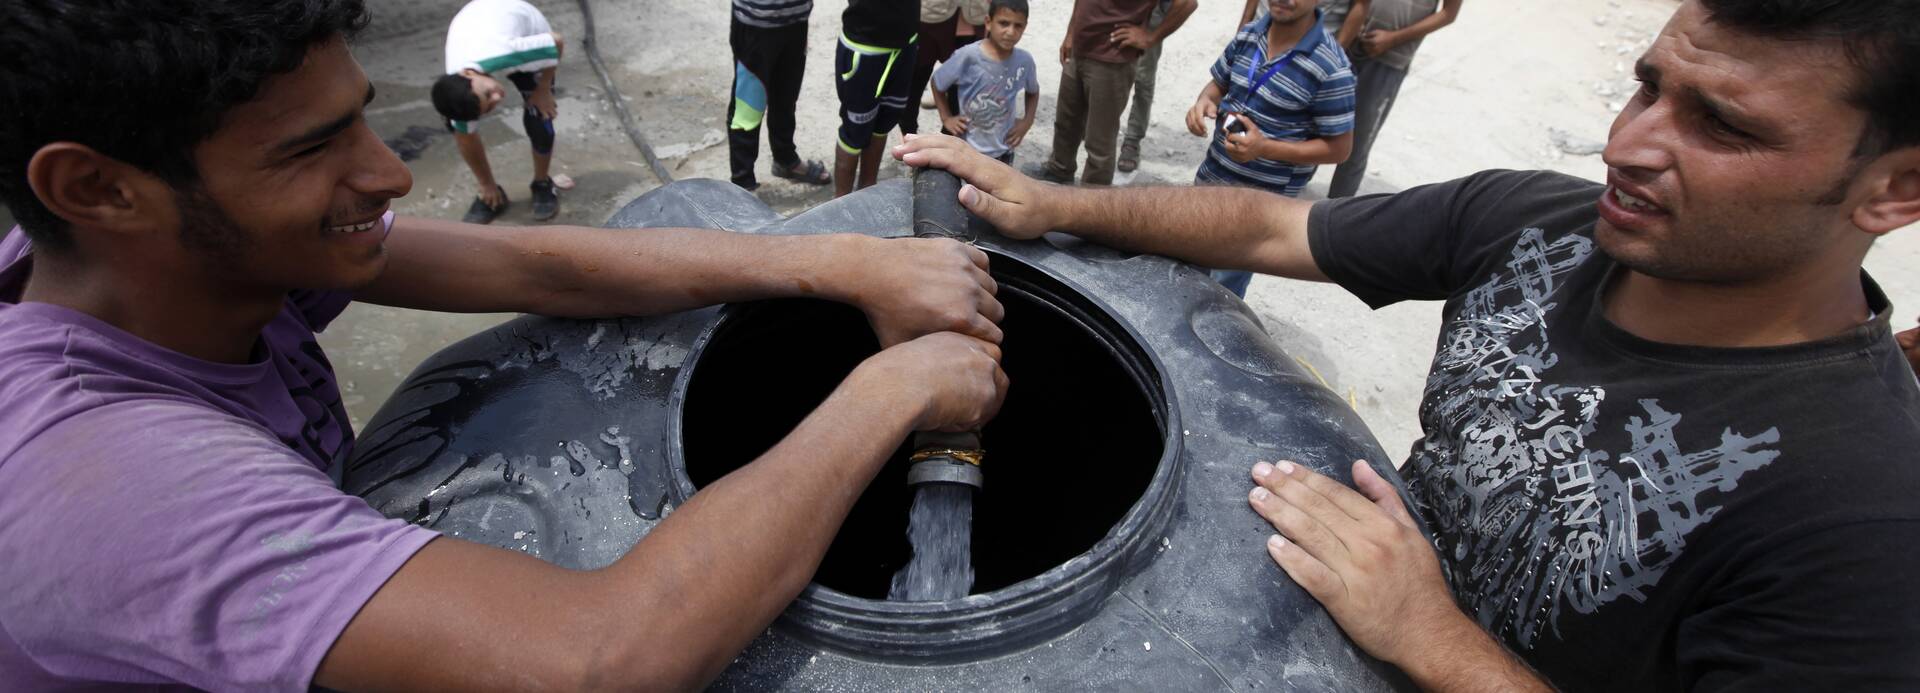 Zwei Männer füllen einen Wassertank mit frischem Wasser, im Hintergrund stehen weitere Menschen